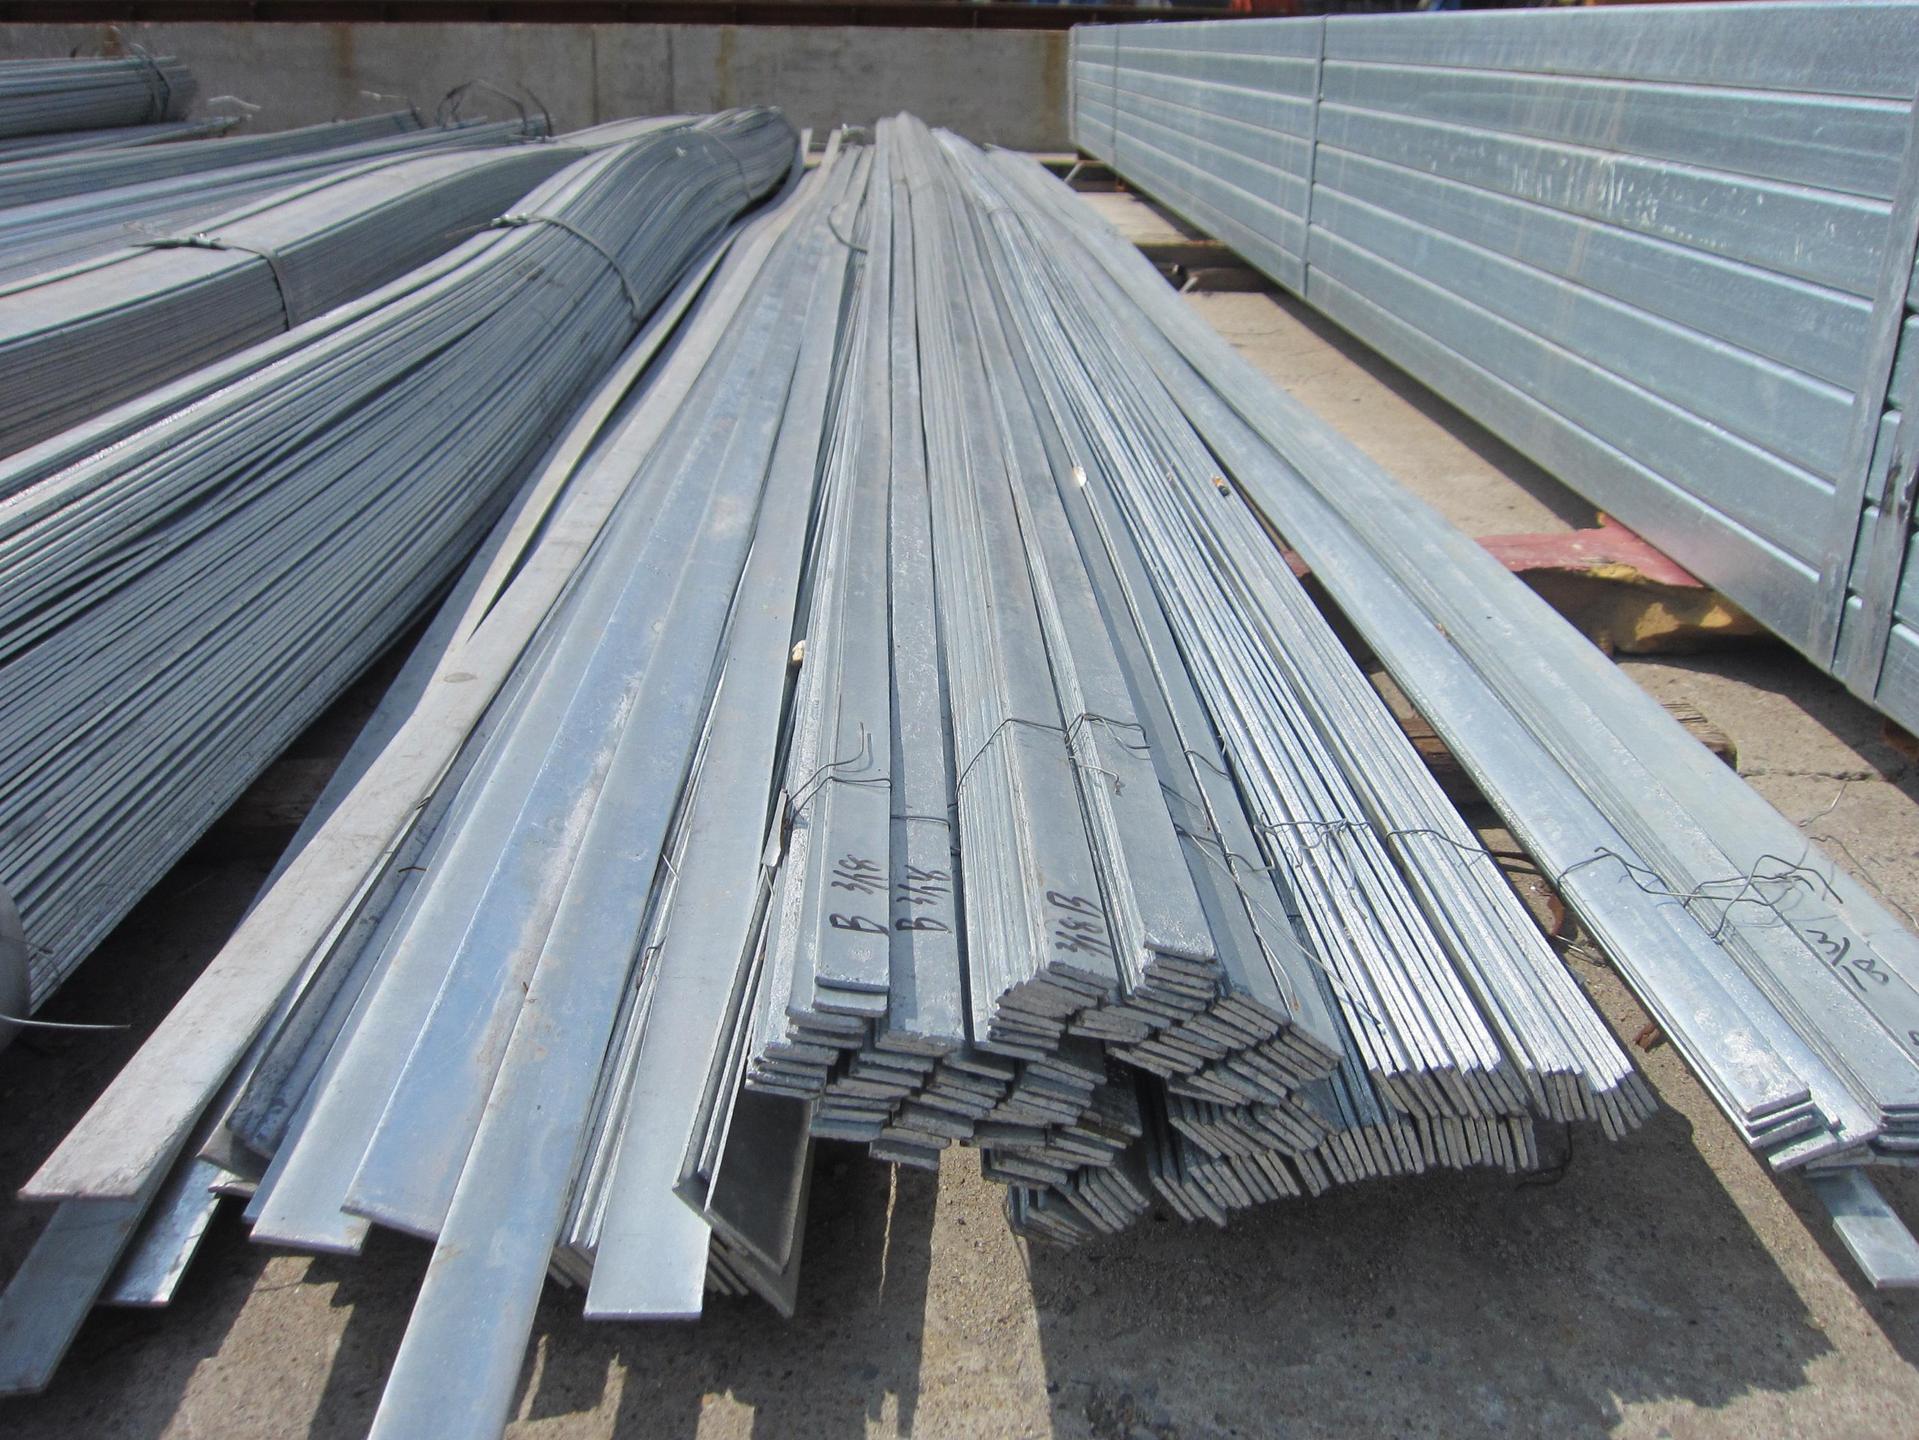 新疆和田地区金属制品有限公司现有现货6000吨扁钢规格型号齐全质优价廉 在线报价 欢迎来电